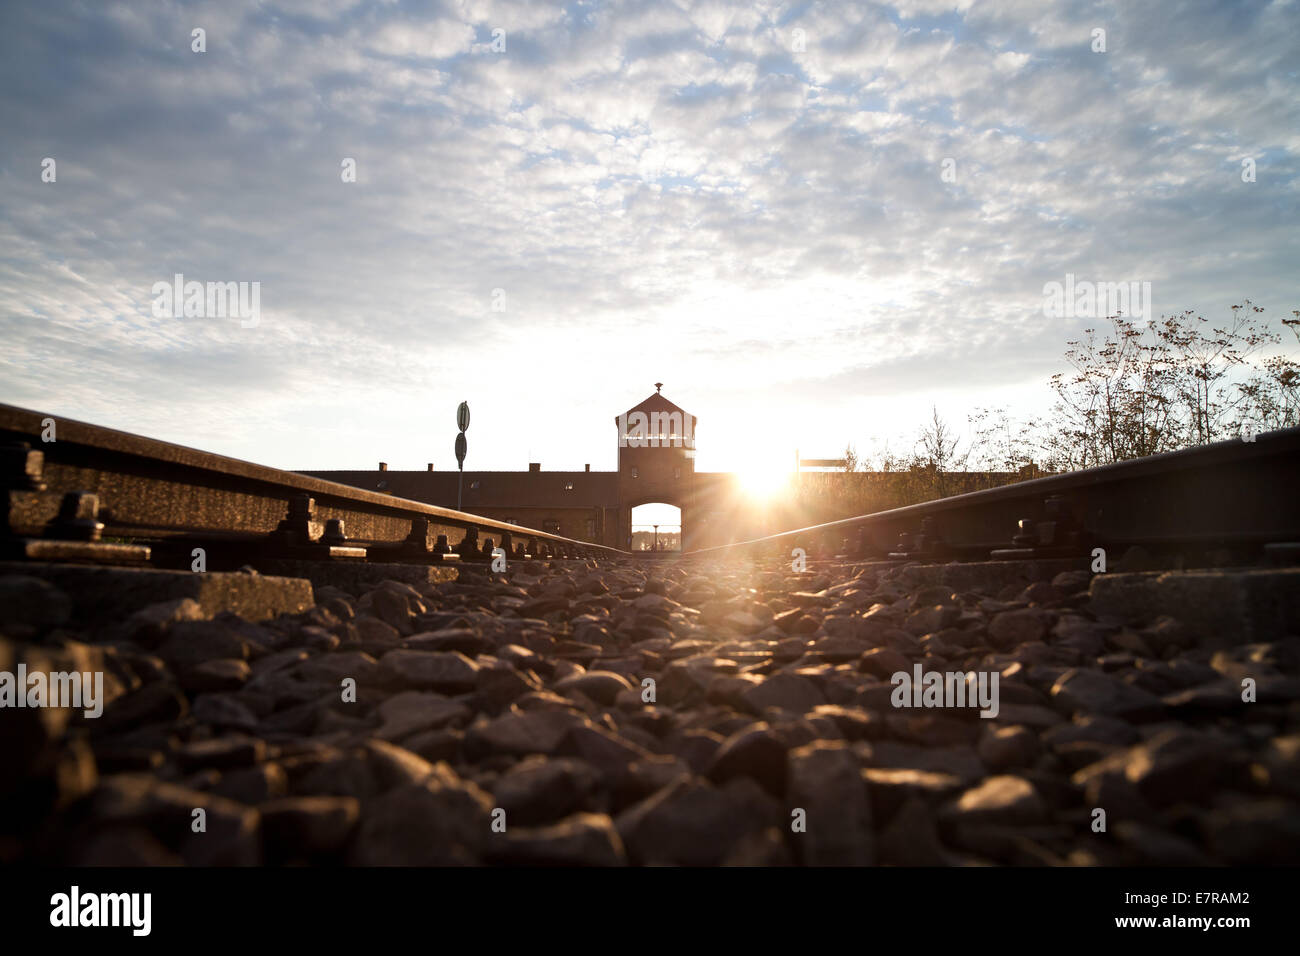 Il cancello di ingresso all'ex campo di concentramento di Auschwitz-Birkenau come visto in Oświęcim, Polonia, 25 agosto 2014. Foto: Daniel Naupold/dpa Foto Stock